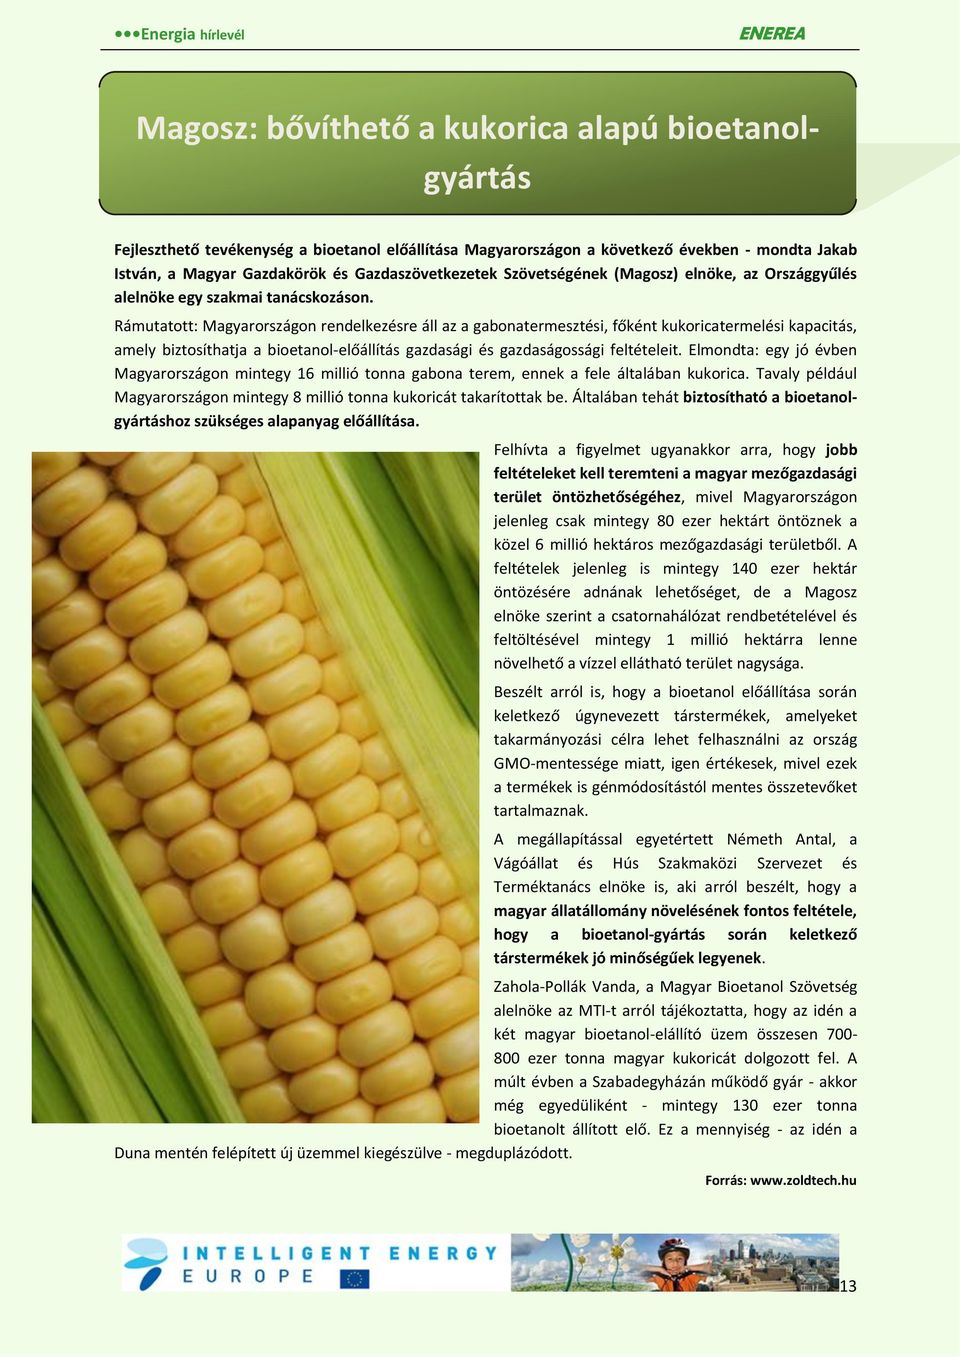 Rámutatott: Magyarországon rendelkezésre áll az a gabonatermesztési, főként kukoricatermelési kapacitás, amely biztosíthatja a bioetanol-előállítás gazdasági és gazdaságossági feltételeit.